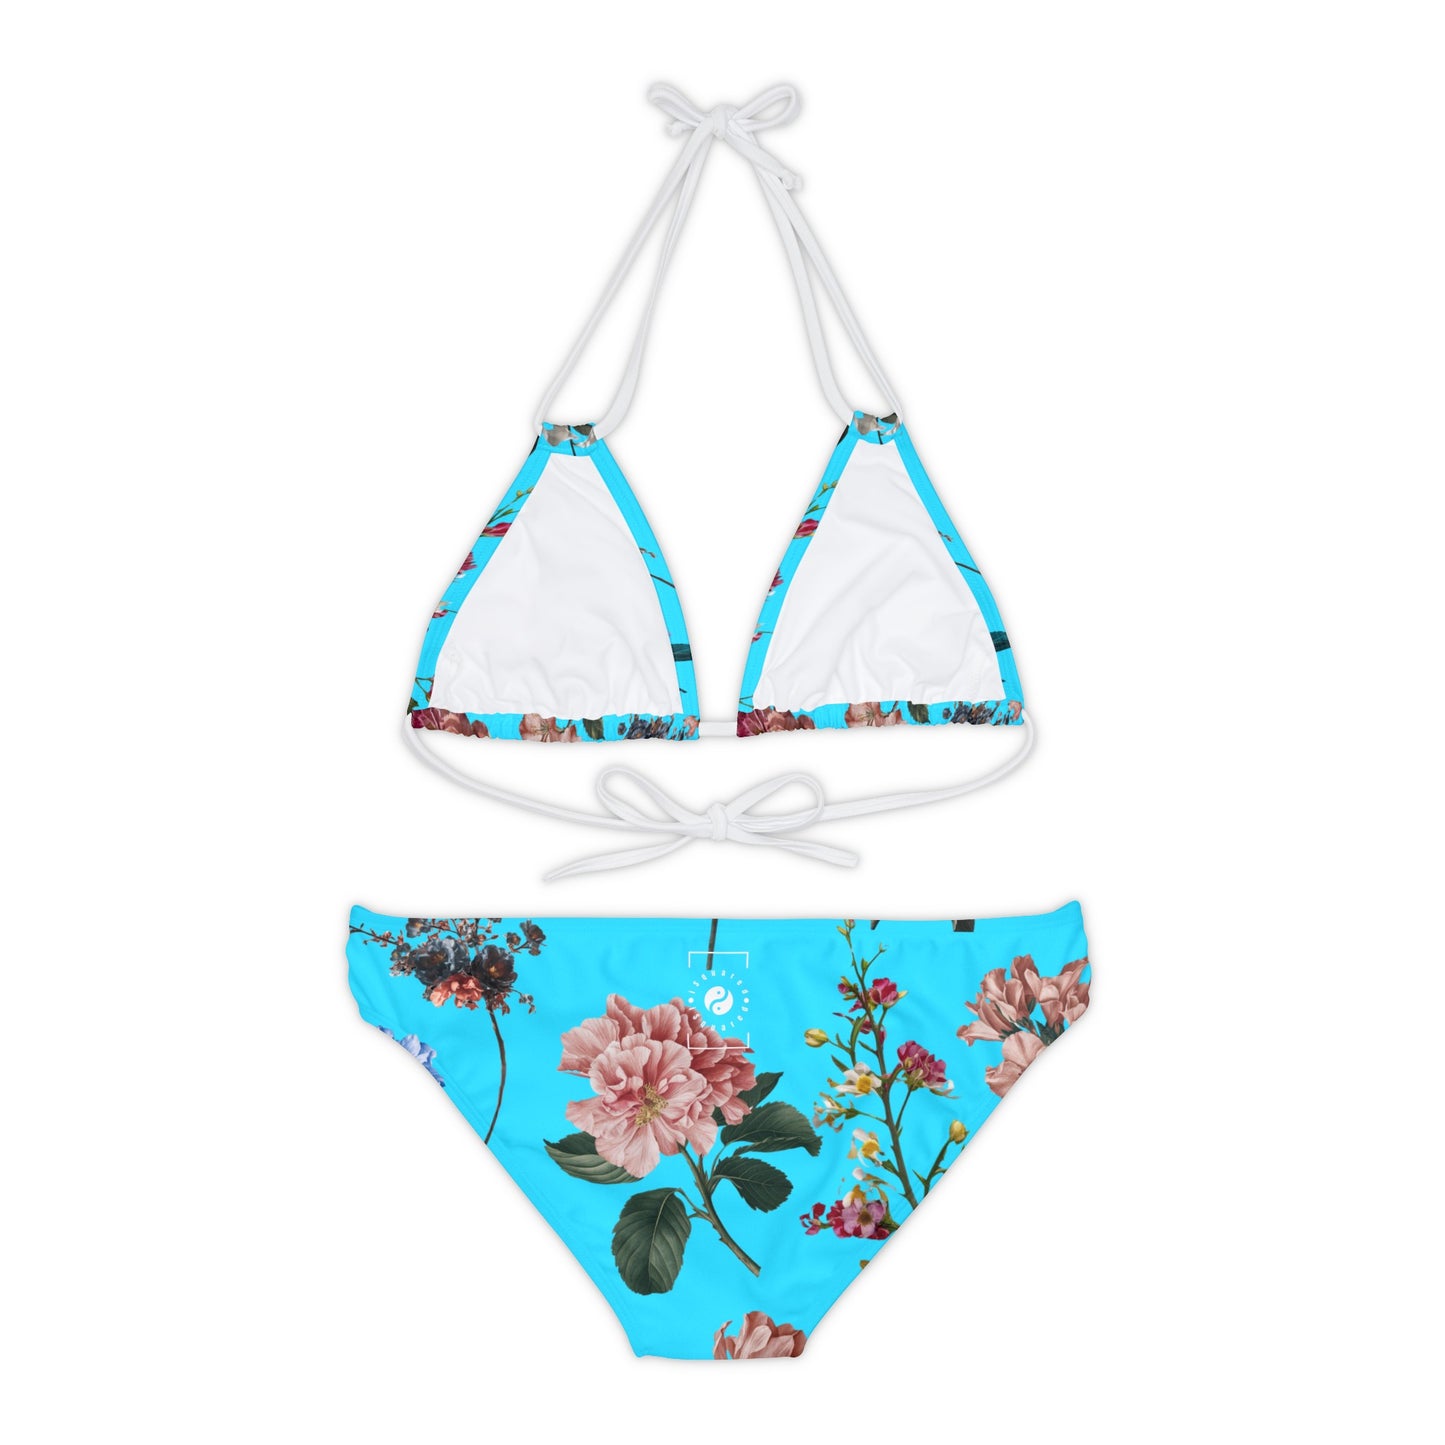 Botanicals on Azure - Lace-up Bikini Set